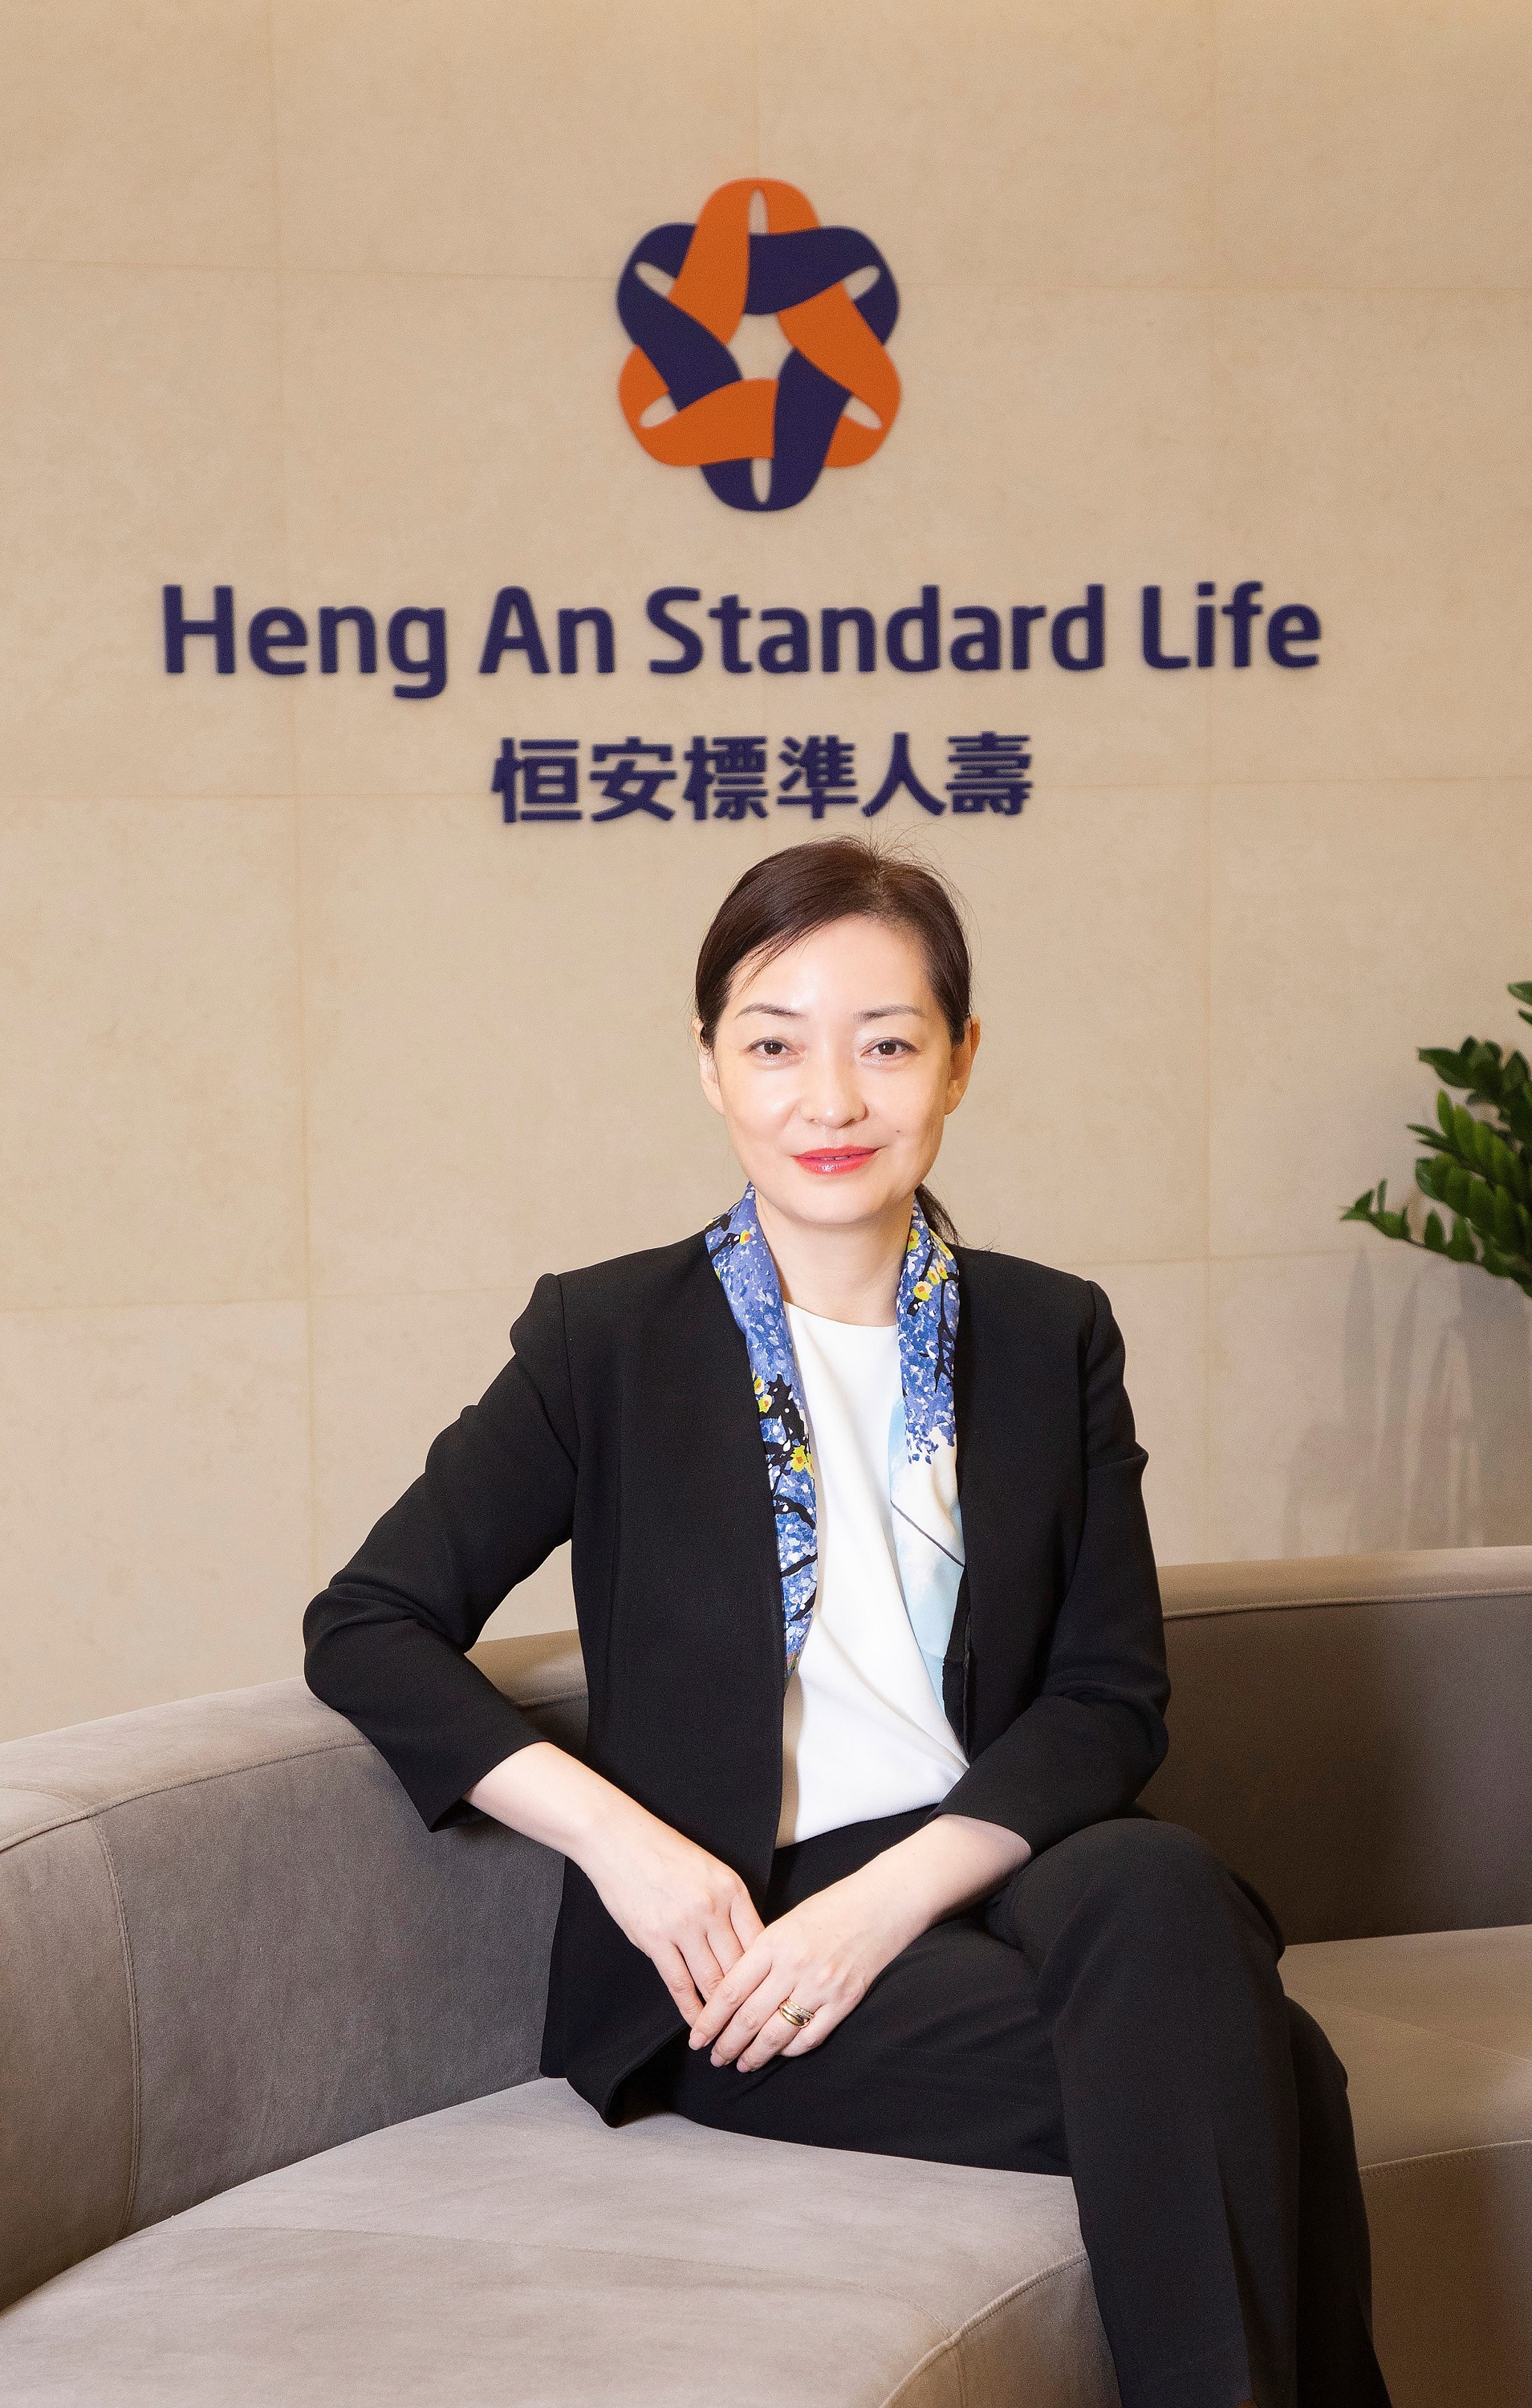 恒安標準人壽亞洲行政總裁劉東煜女士表示歡迎及全力支持香港新資本投資者入境計畫，增強香港財富管理的發展優勢。同時，為慶祝公司成立25周年，推出「5N全新提案」，響應客戶需求，矢志繼續成為香港領先以理財為主的保險公司。